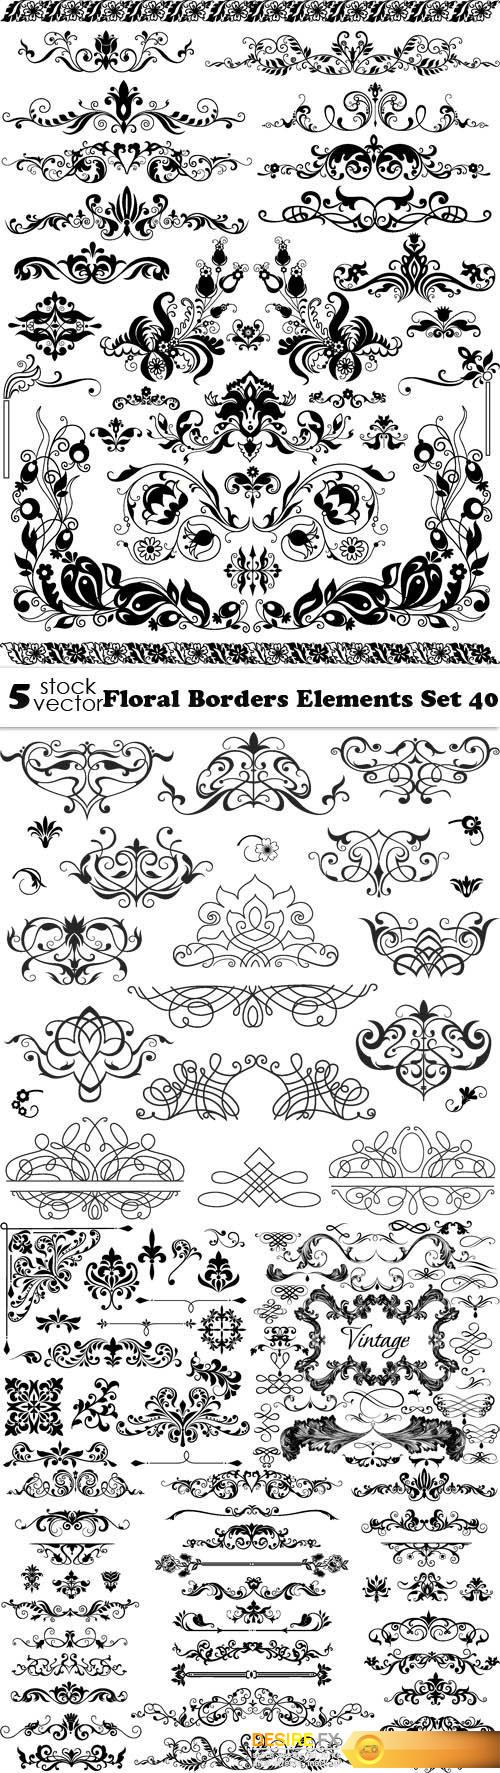 Vectors - Floral Borders Elements Set 40